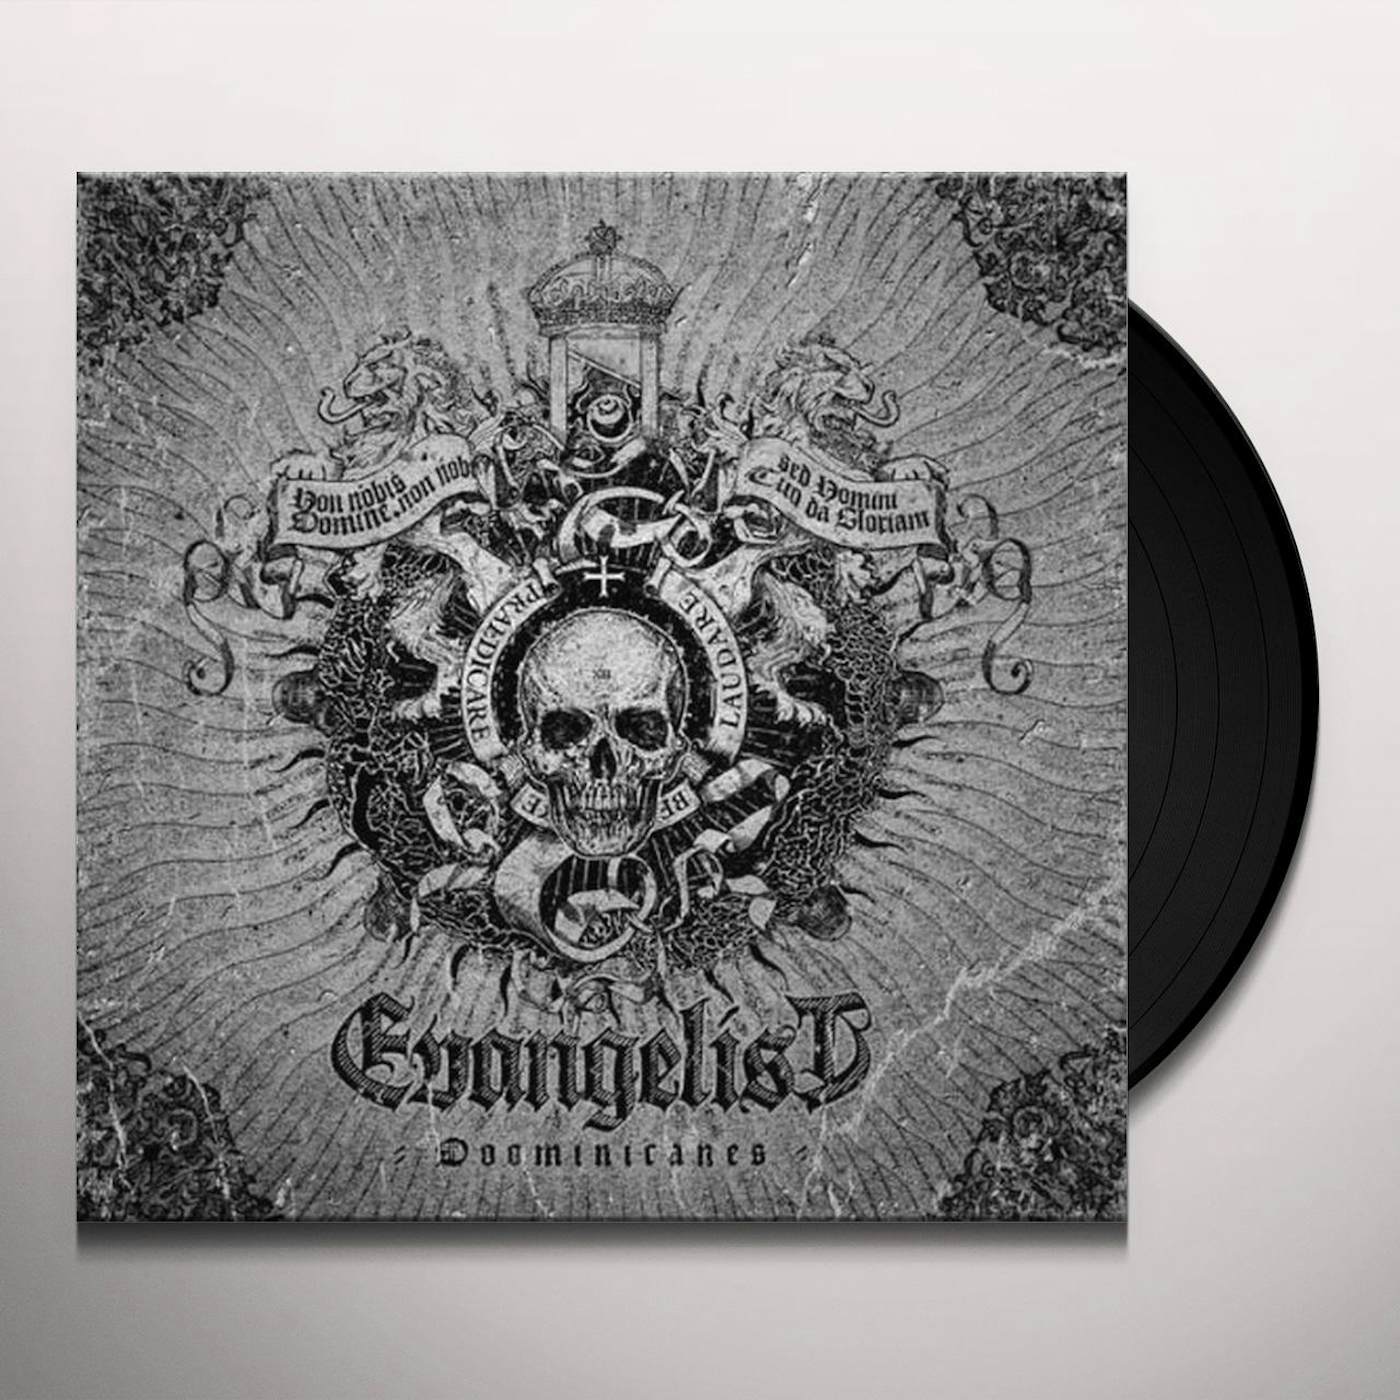 Evangelist Doominicanes Vinyl Record